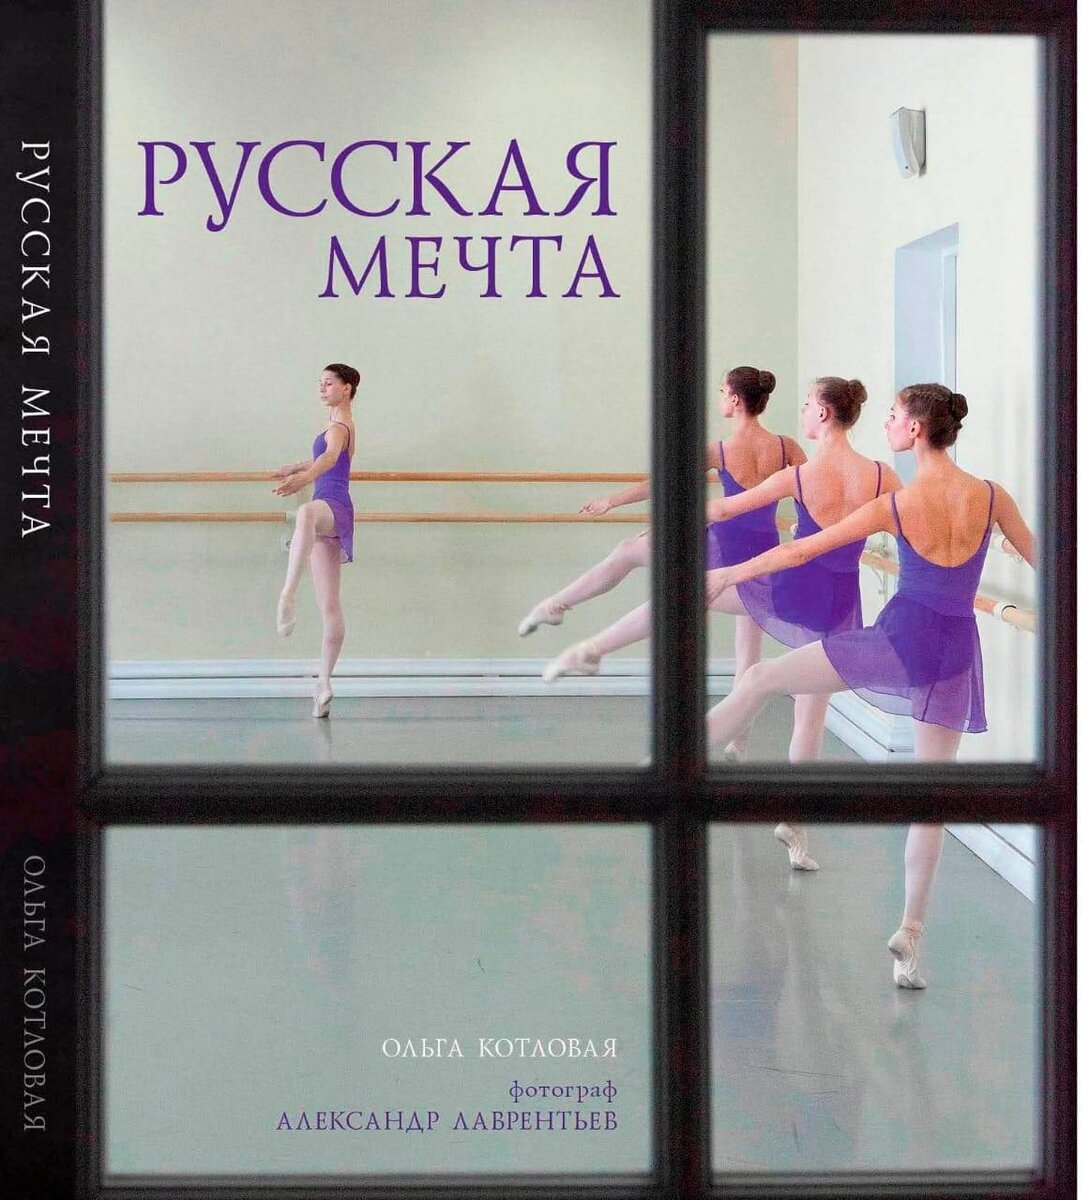 Небольшой список интереснейших книг о балете и тех, кто к нему причастен.